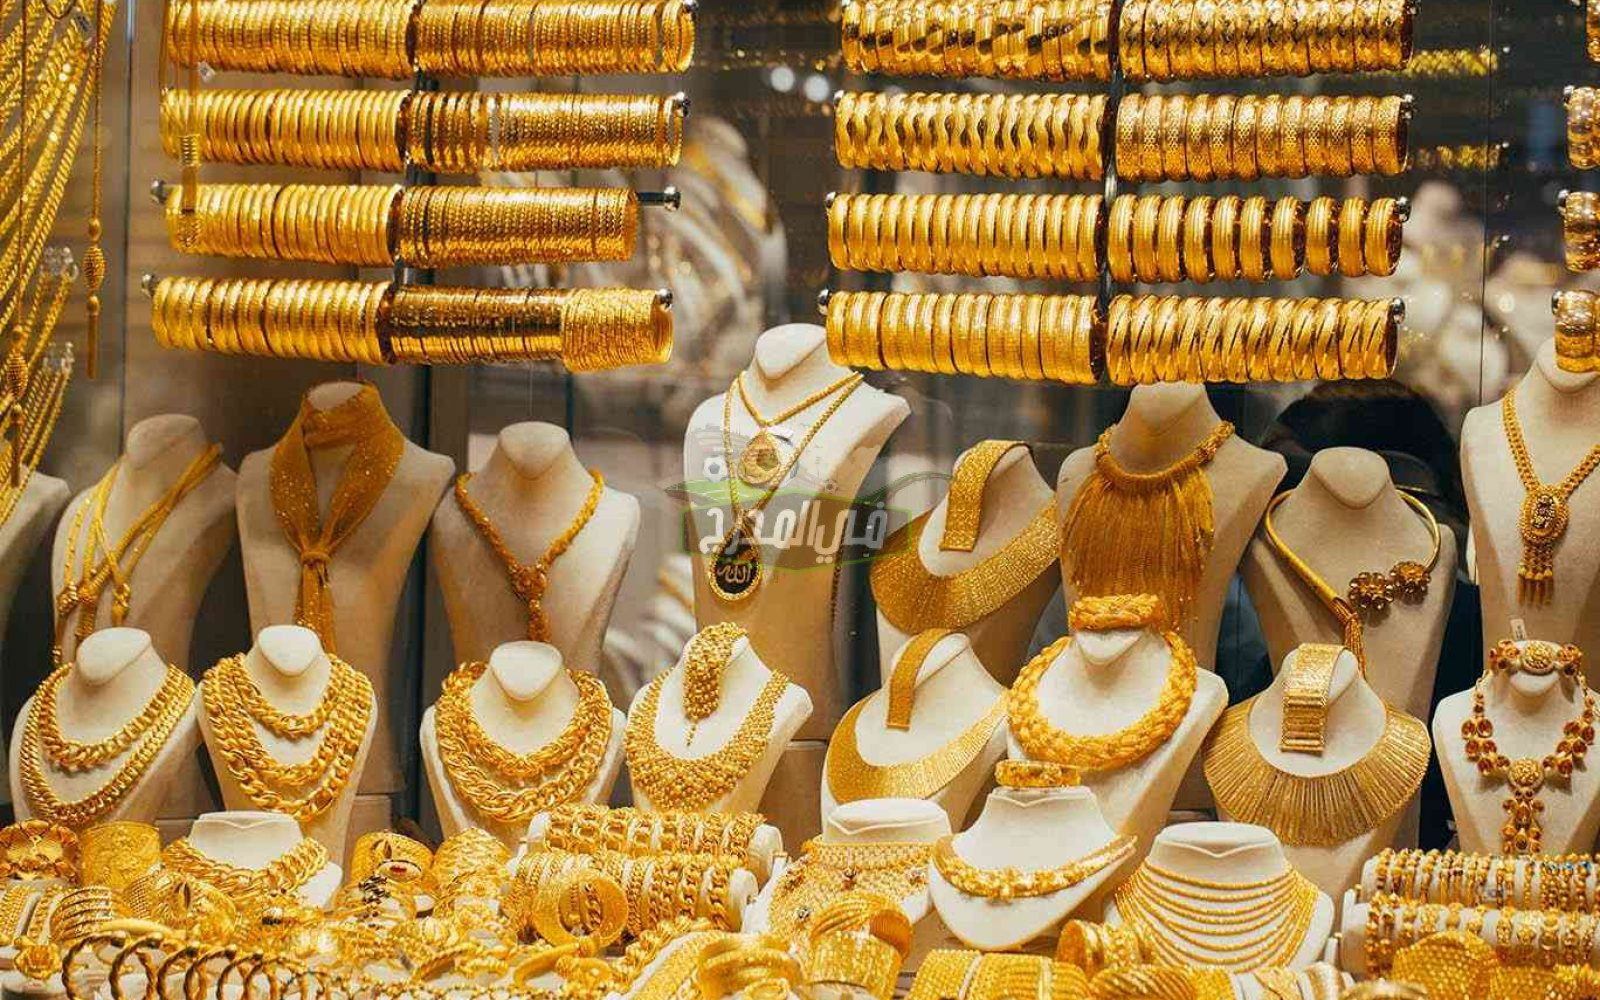 بكم سعر الذهب اليوم عيار 21 في مصر اليوم الخميس 23 سبتمبر 2021